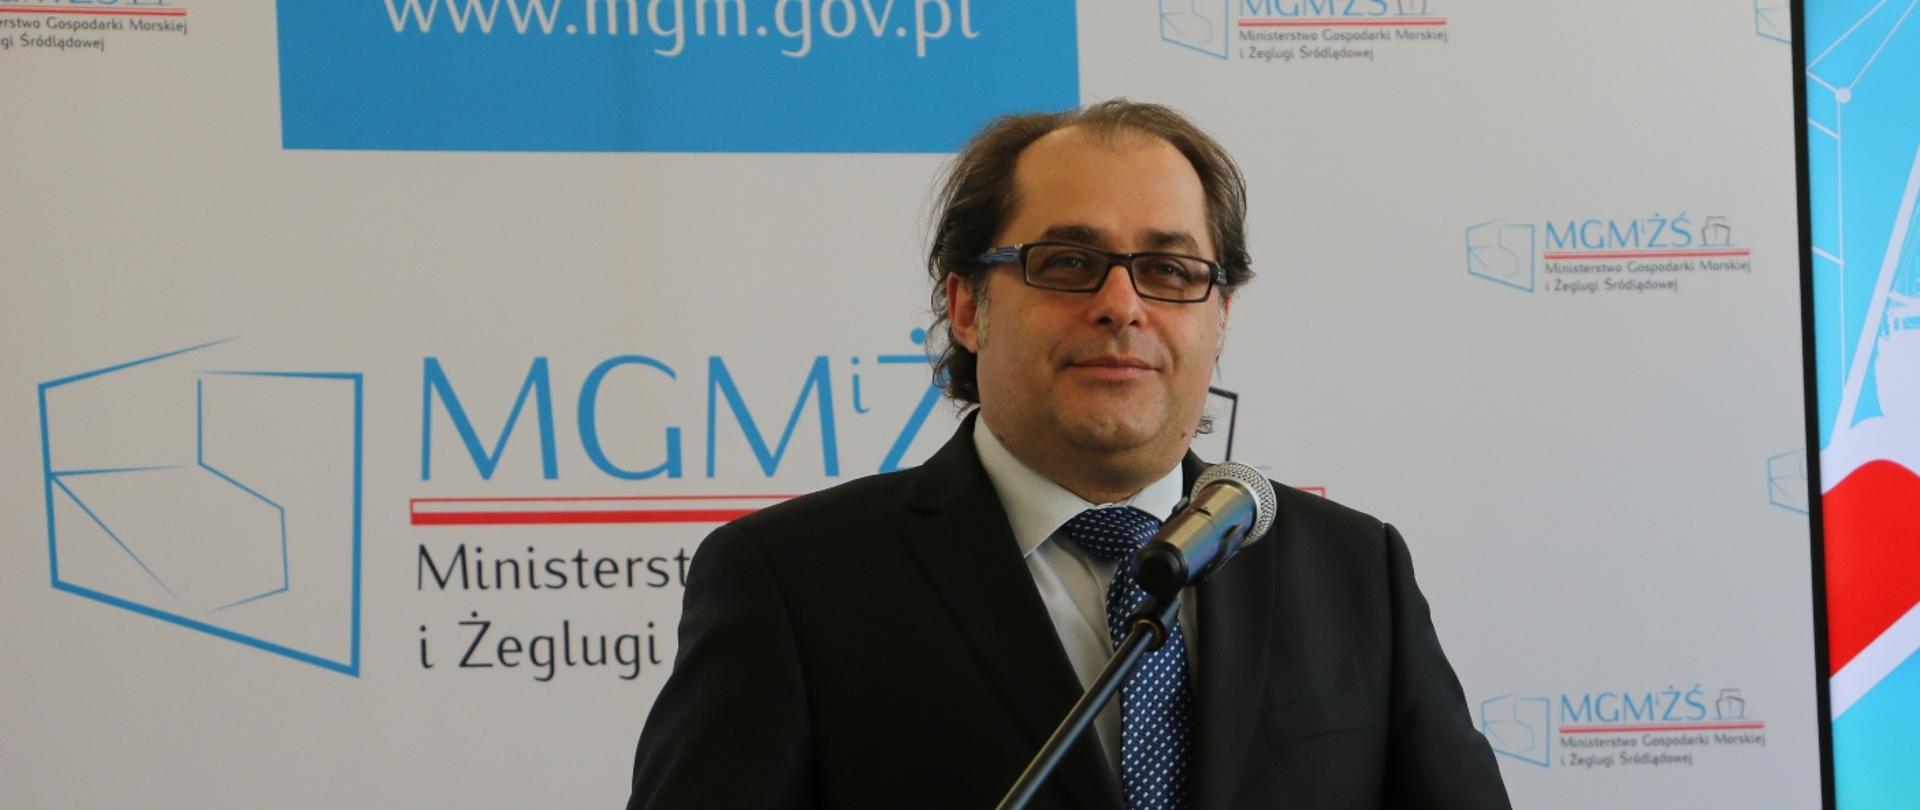 Minister Marek Gróbarczyk przemawia na spotkaniu programowym Światowych Dni Morza